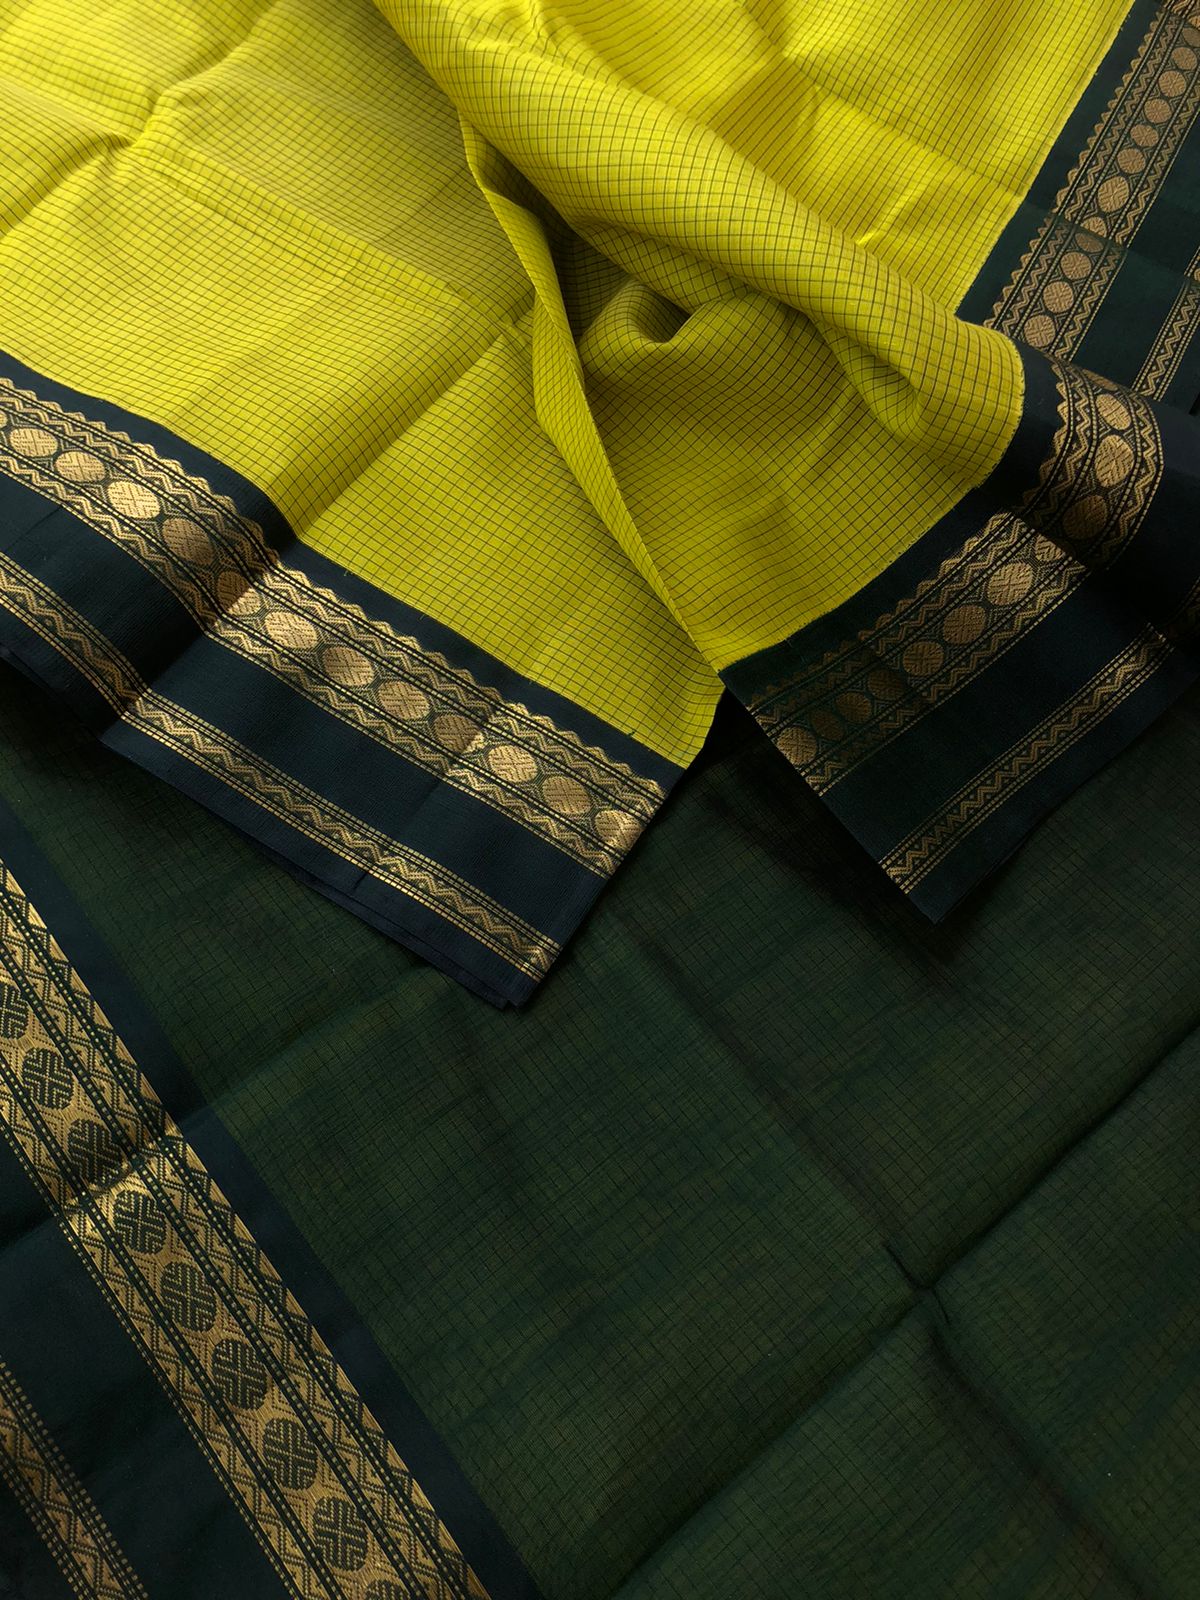 Korvai Silk Cotton - sampanga yellow and deep Meenakshi green podi kattam